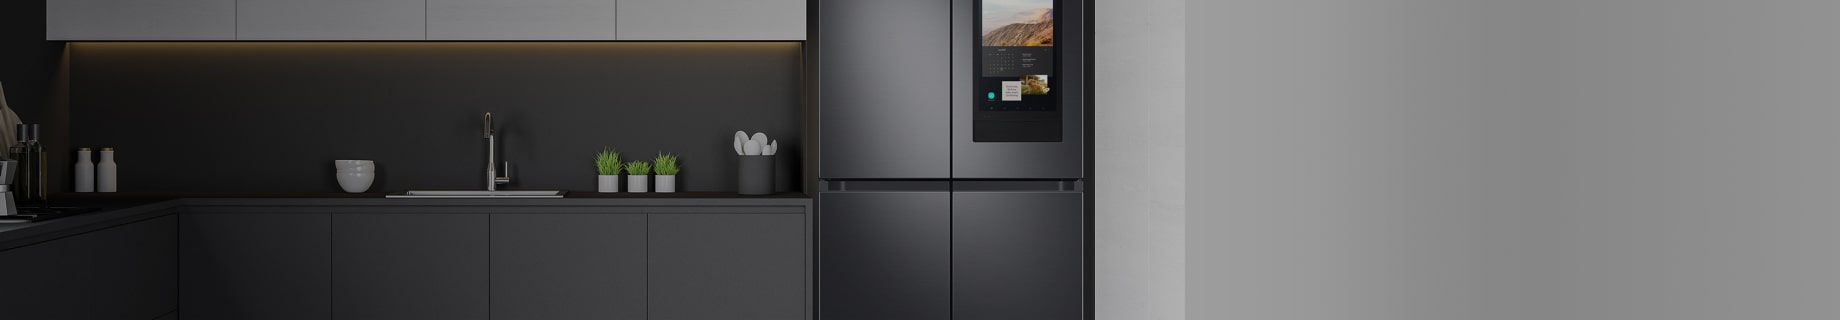 Imagen un refrigerador gris empotrado, al lado una pared blanca y una cocina gris